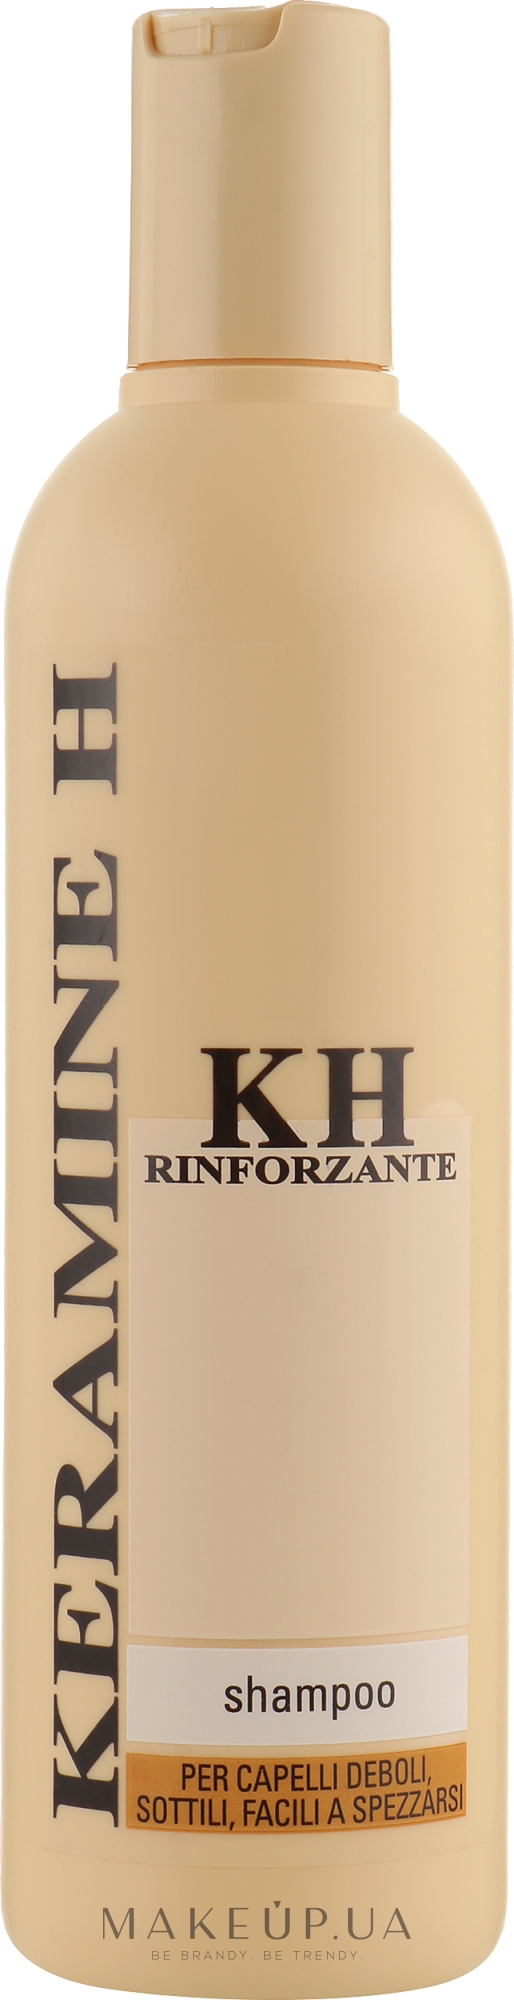 Шампунь для укрепления волос - Keramine H Professional Shampoo Rinforzante — фото 300ml